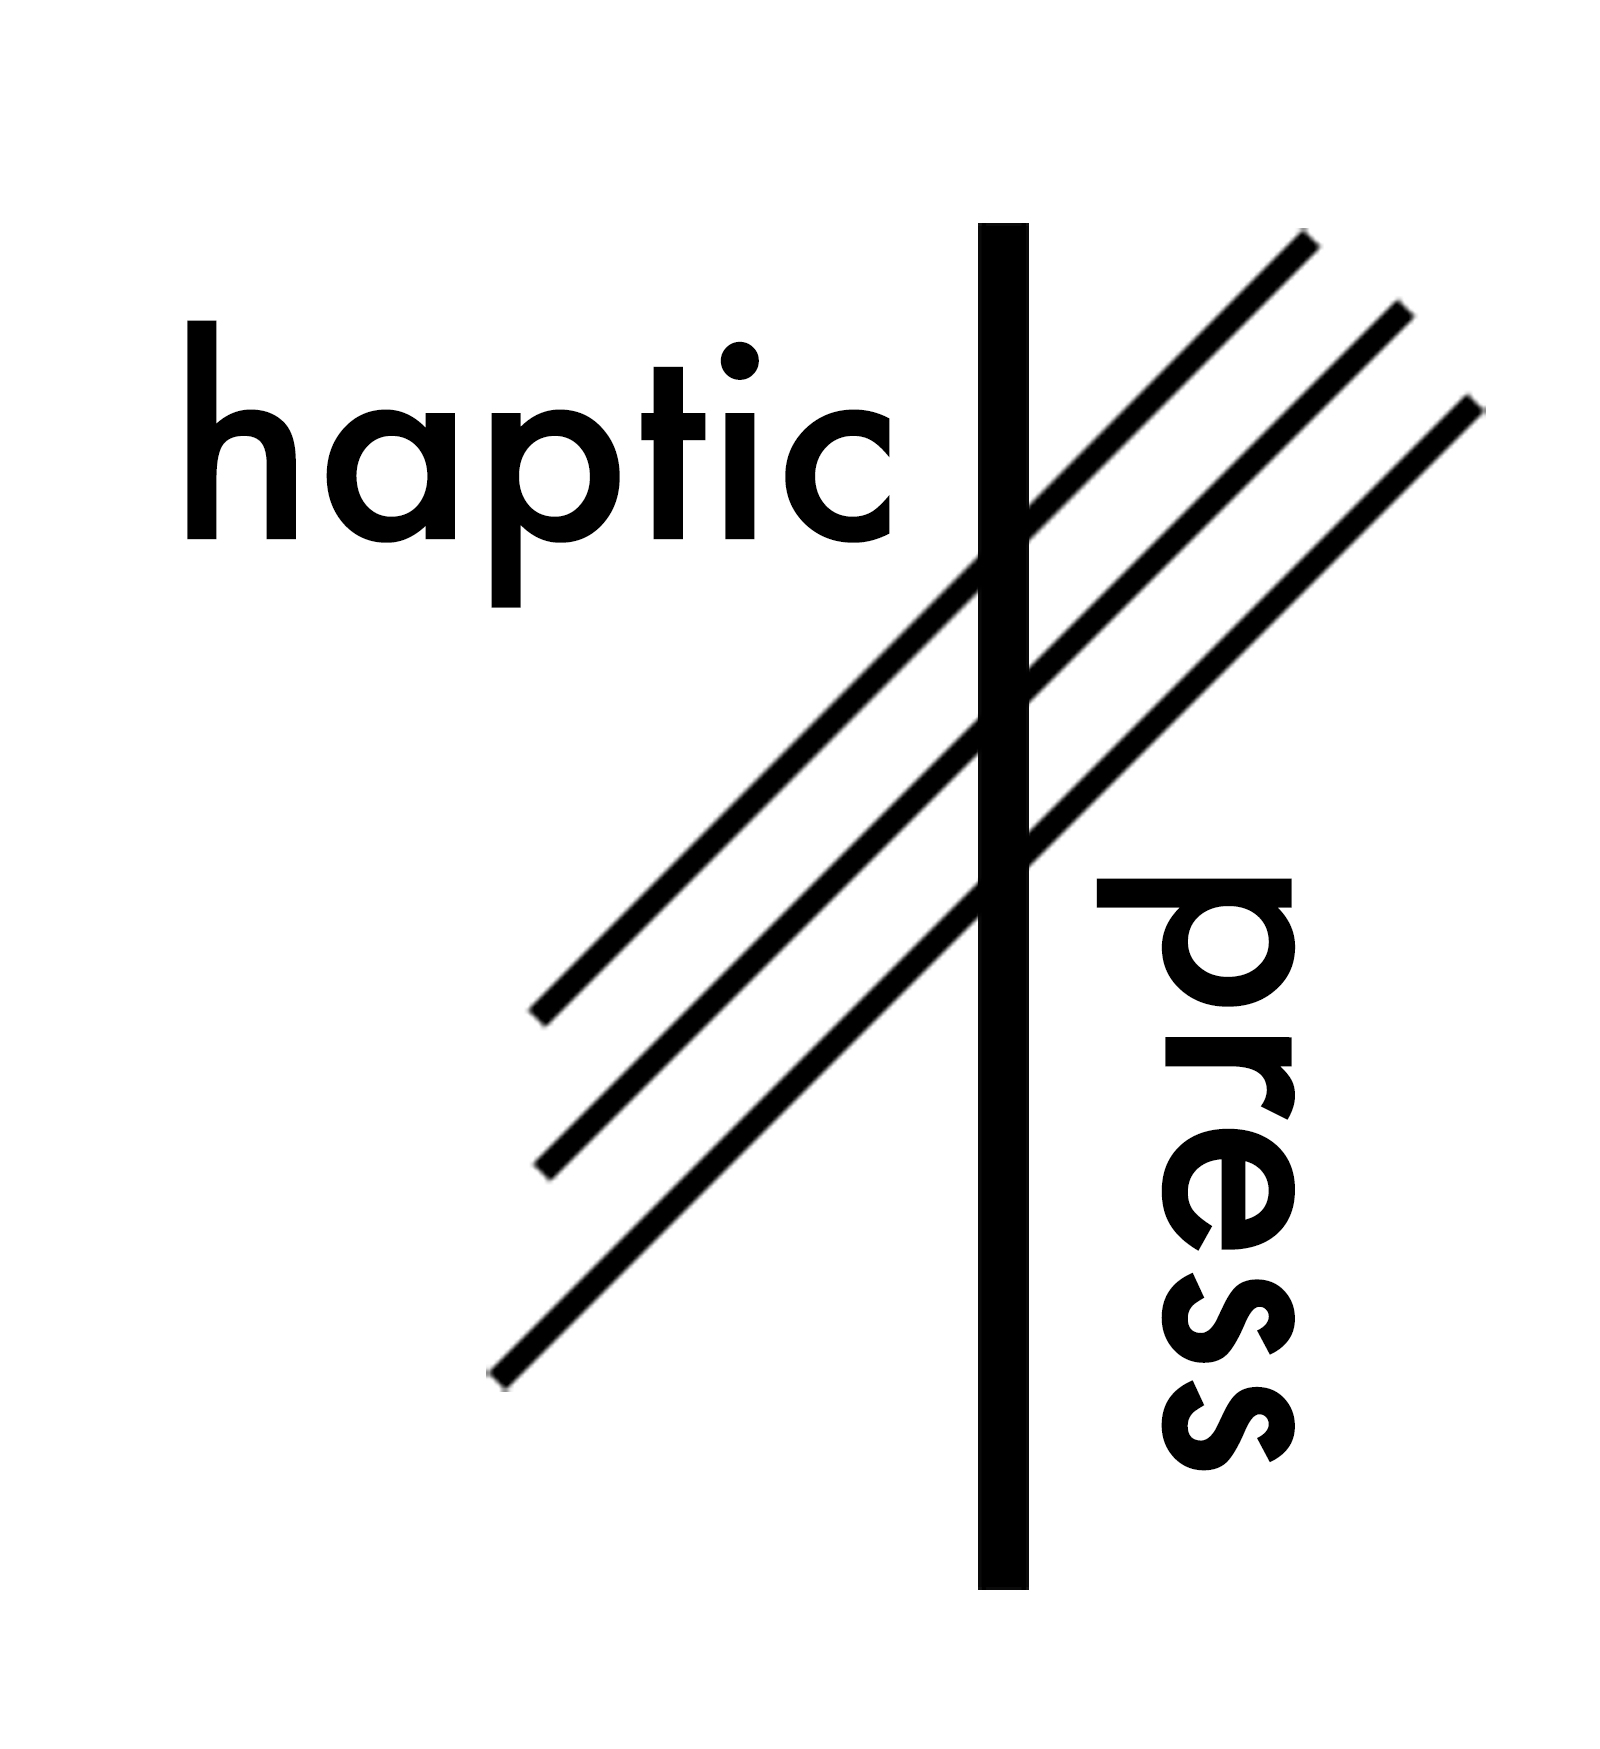 haptic-press-logo-4-cropped